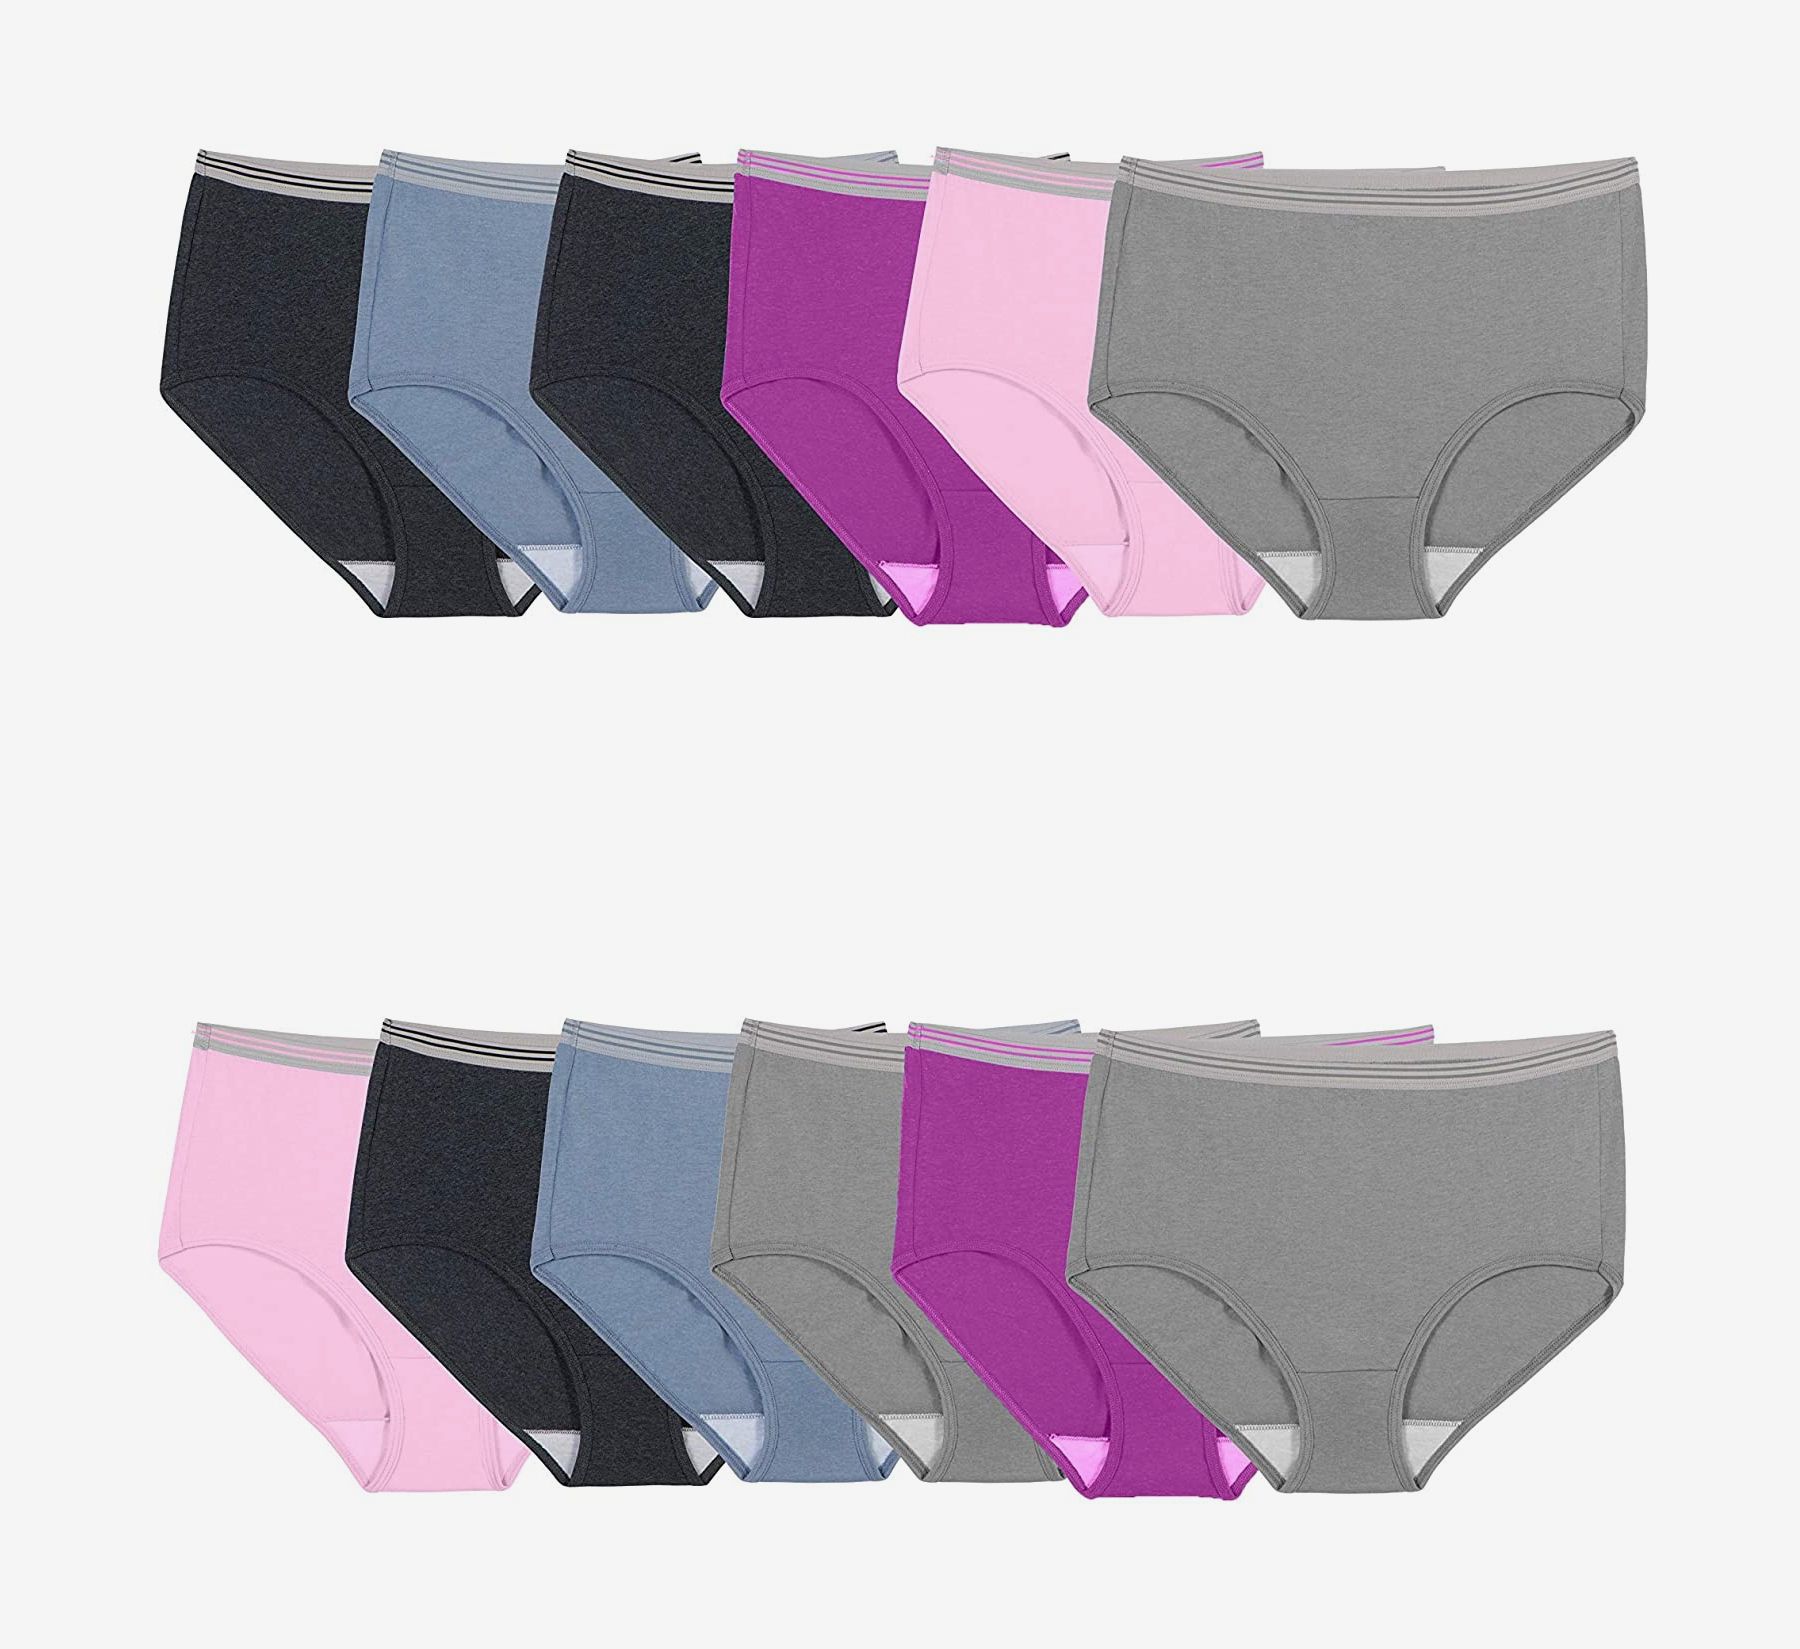 12 Best Women's Underwear to Buy in Bulk